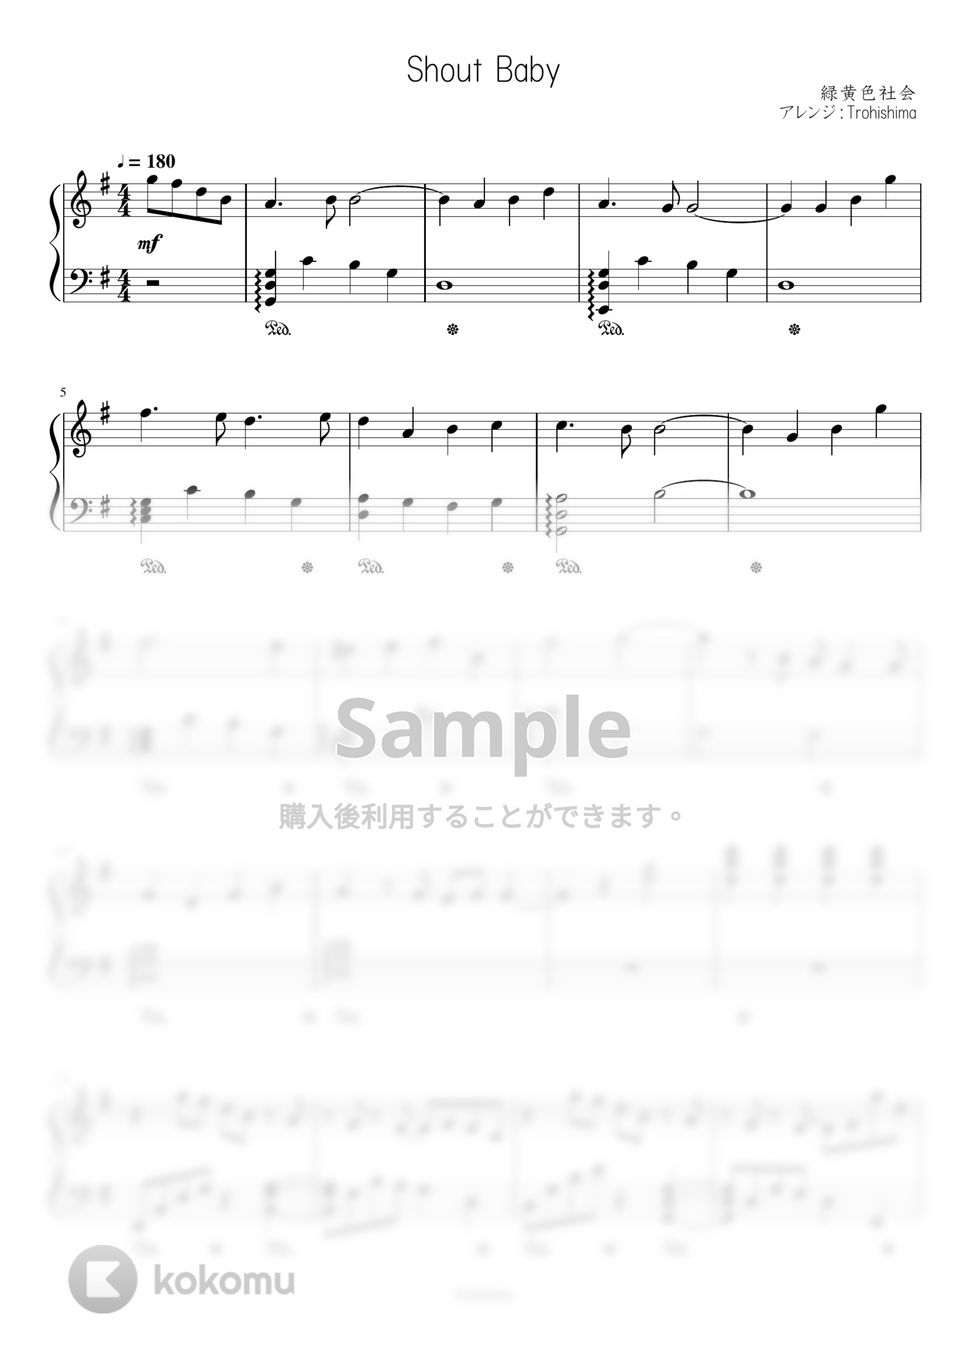 緑黄色社会 - Shout Baby (「僕のヒーローアカデミア」4期EDテーマ) by Trohishima